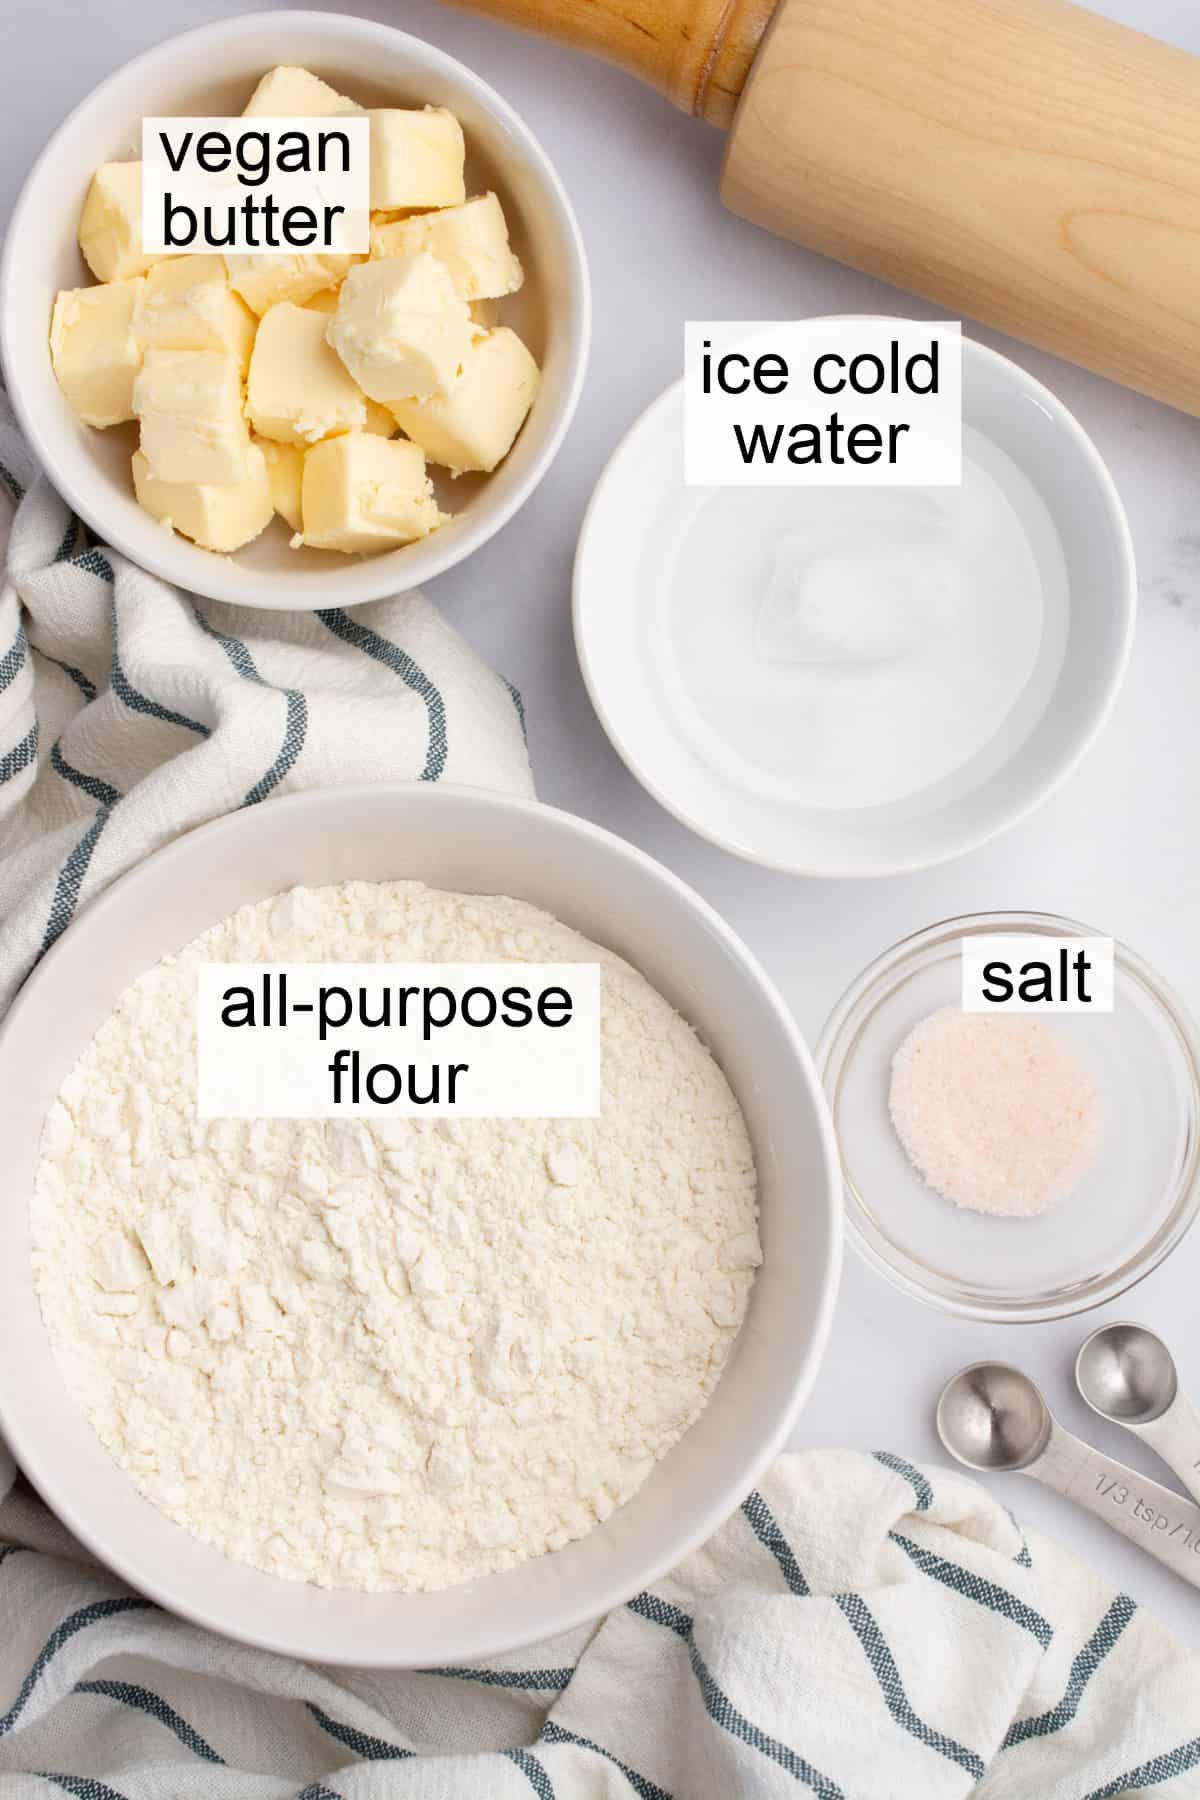 Ingredients in bowls to make vegan pie crust.